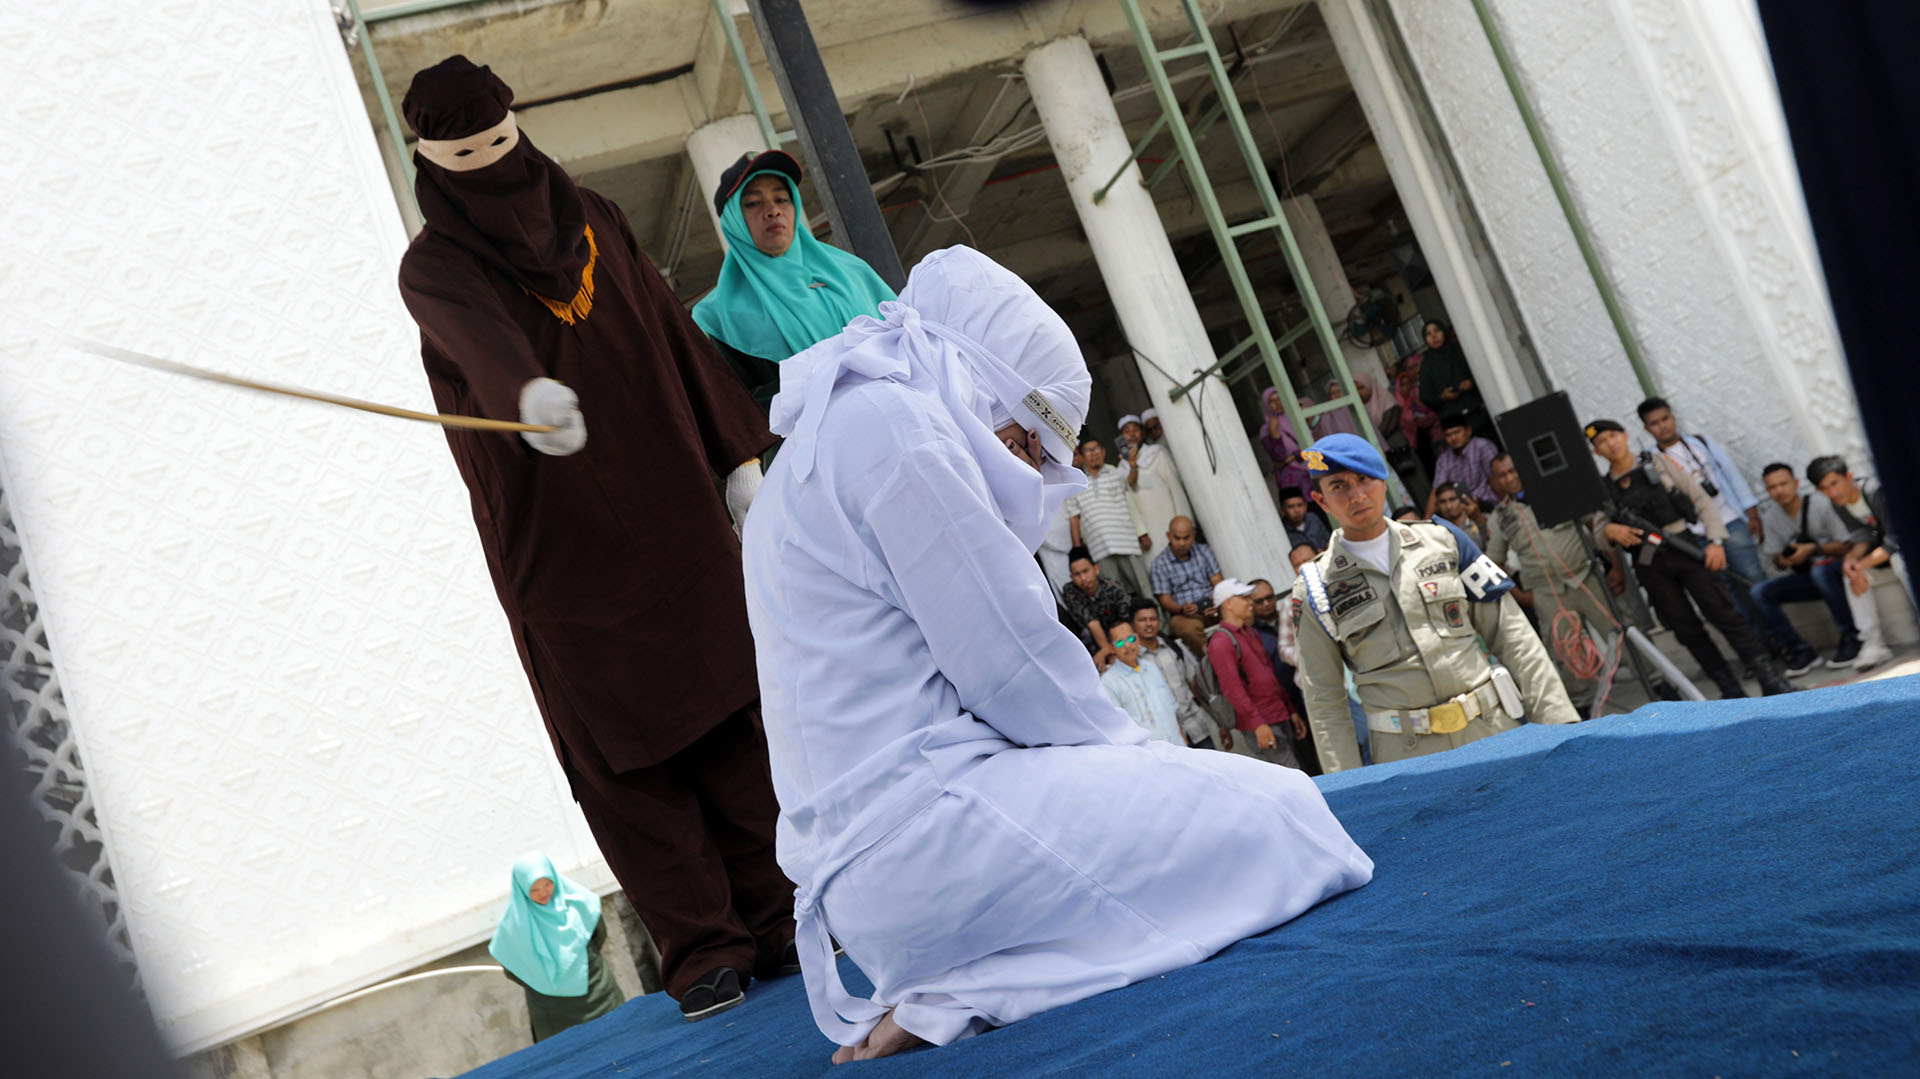 Aplicación de la sharia en Indonesia por sostener relaciones extramaritales (EFE/archivo)